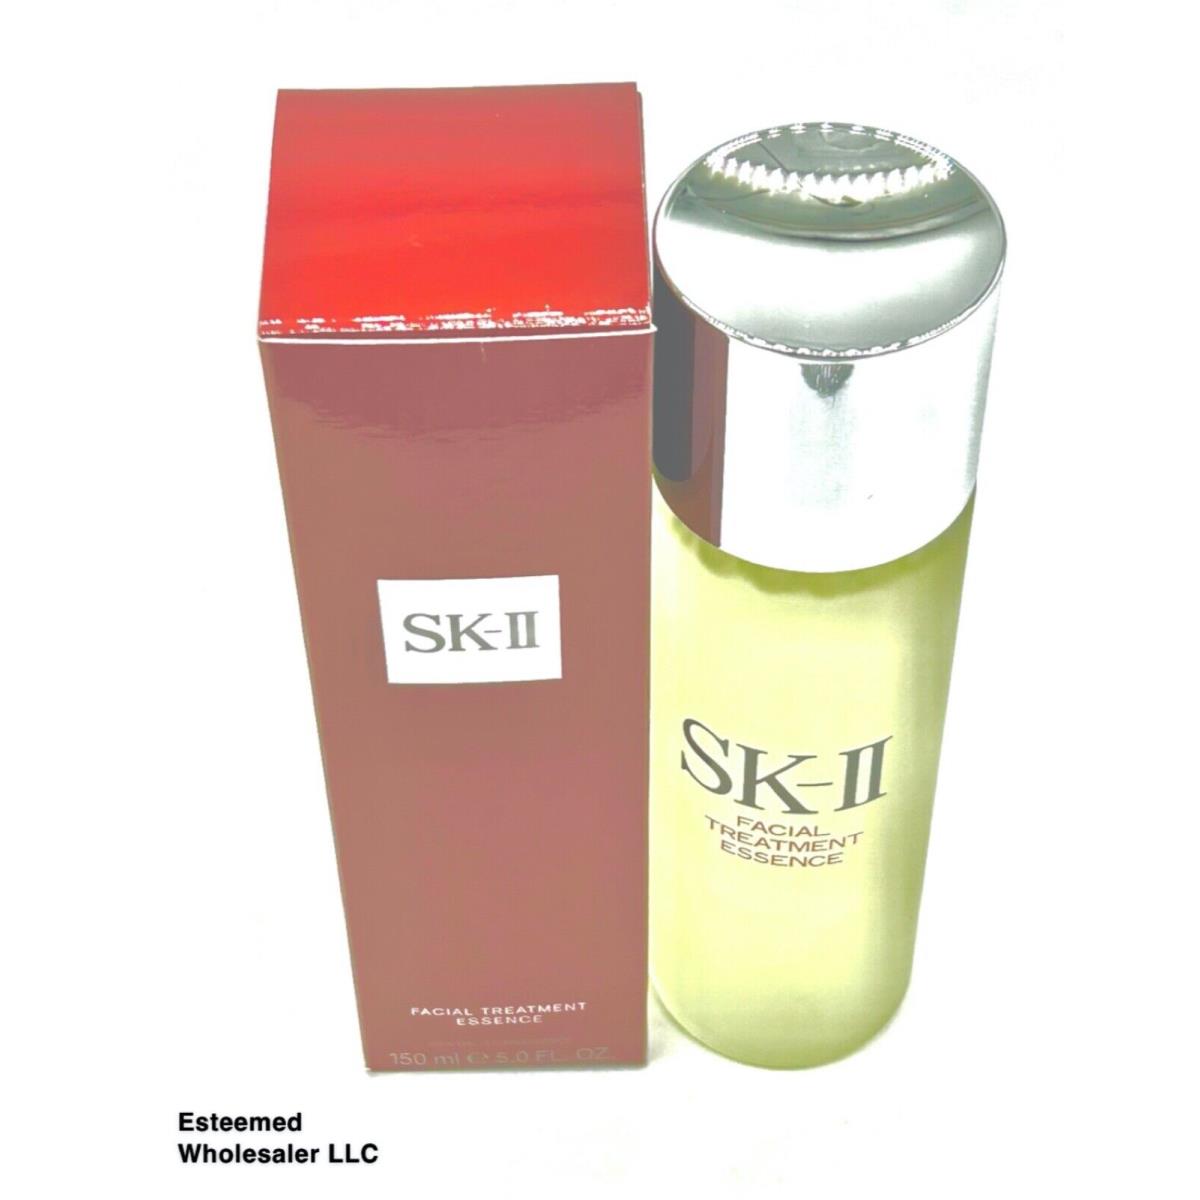 Sk-ii Facial Treatment Essence 5oz